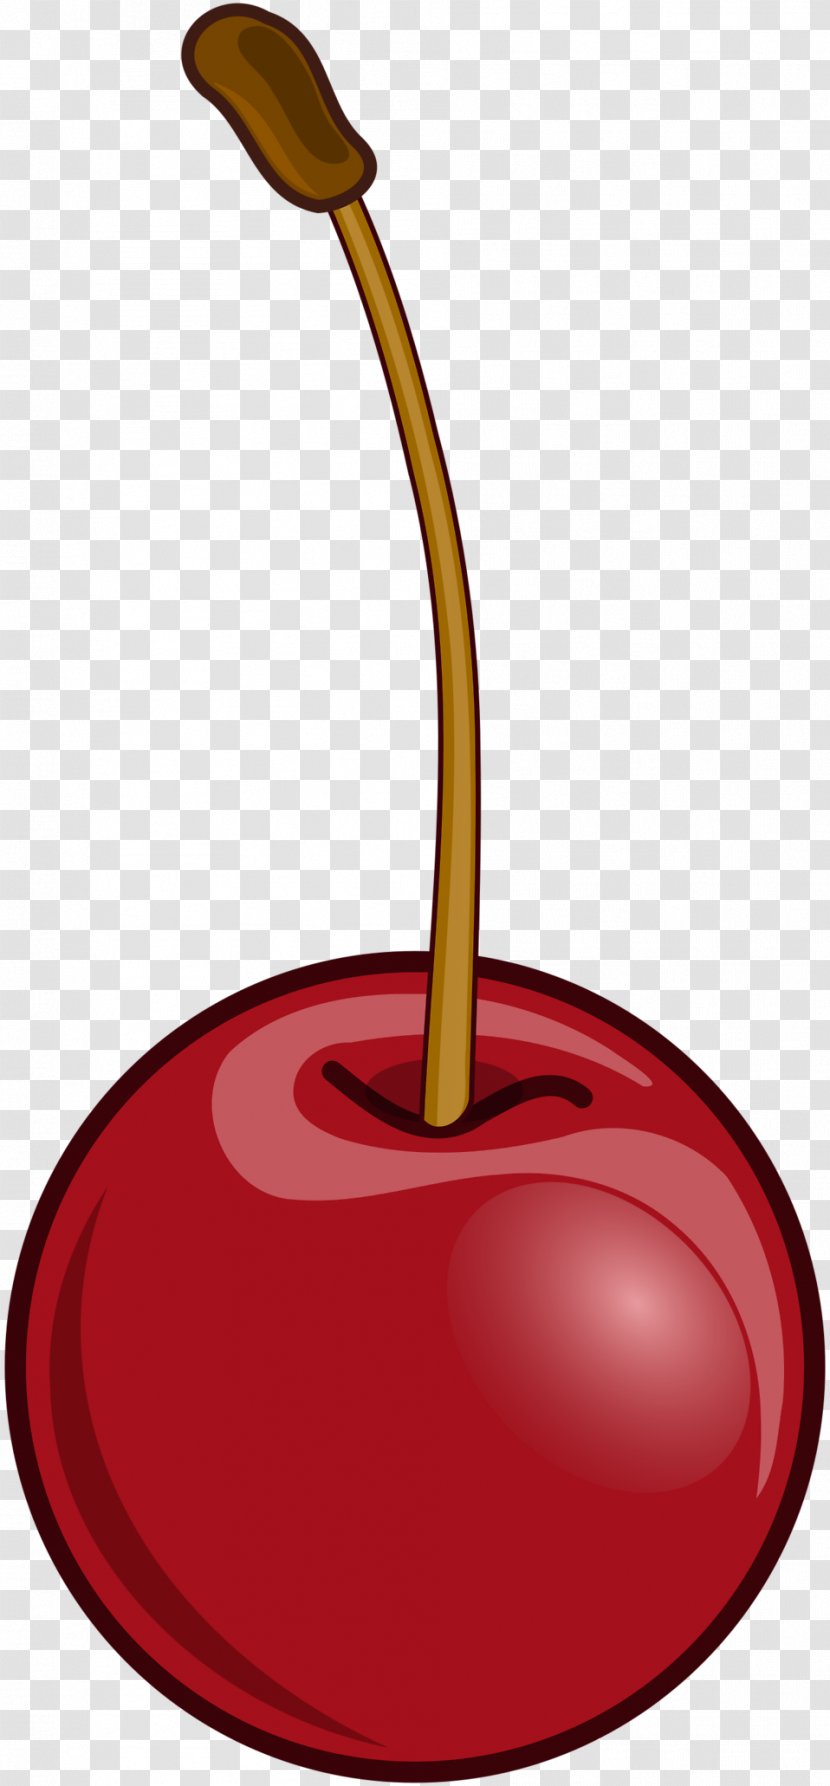 Cherry Pie Fruit Berry Clip Art Transparent PNG